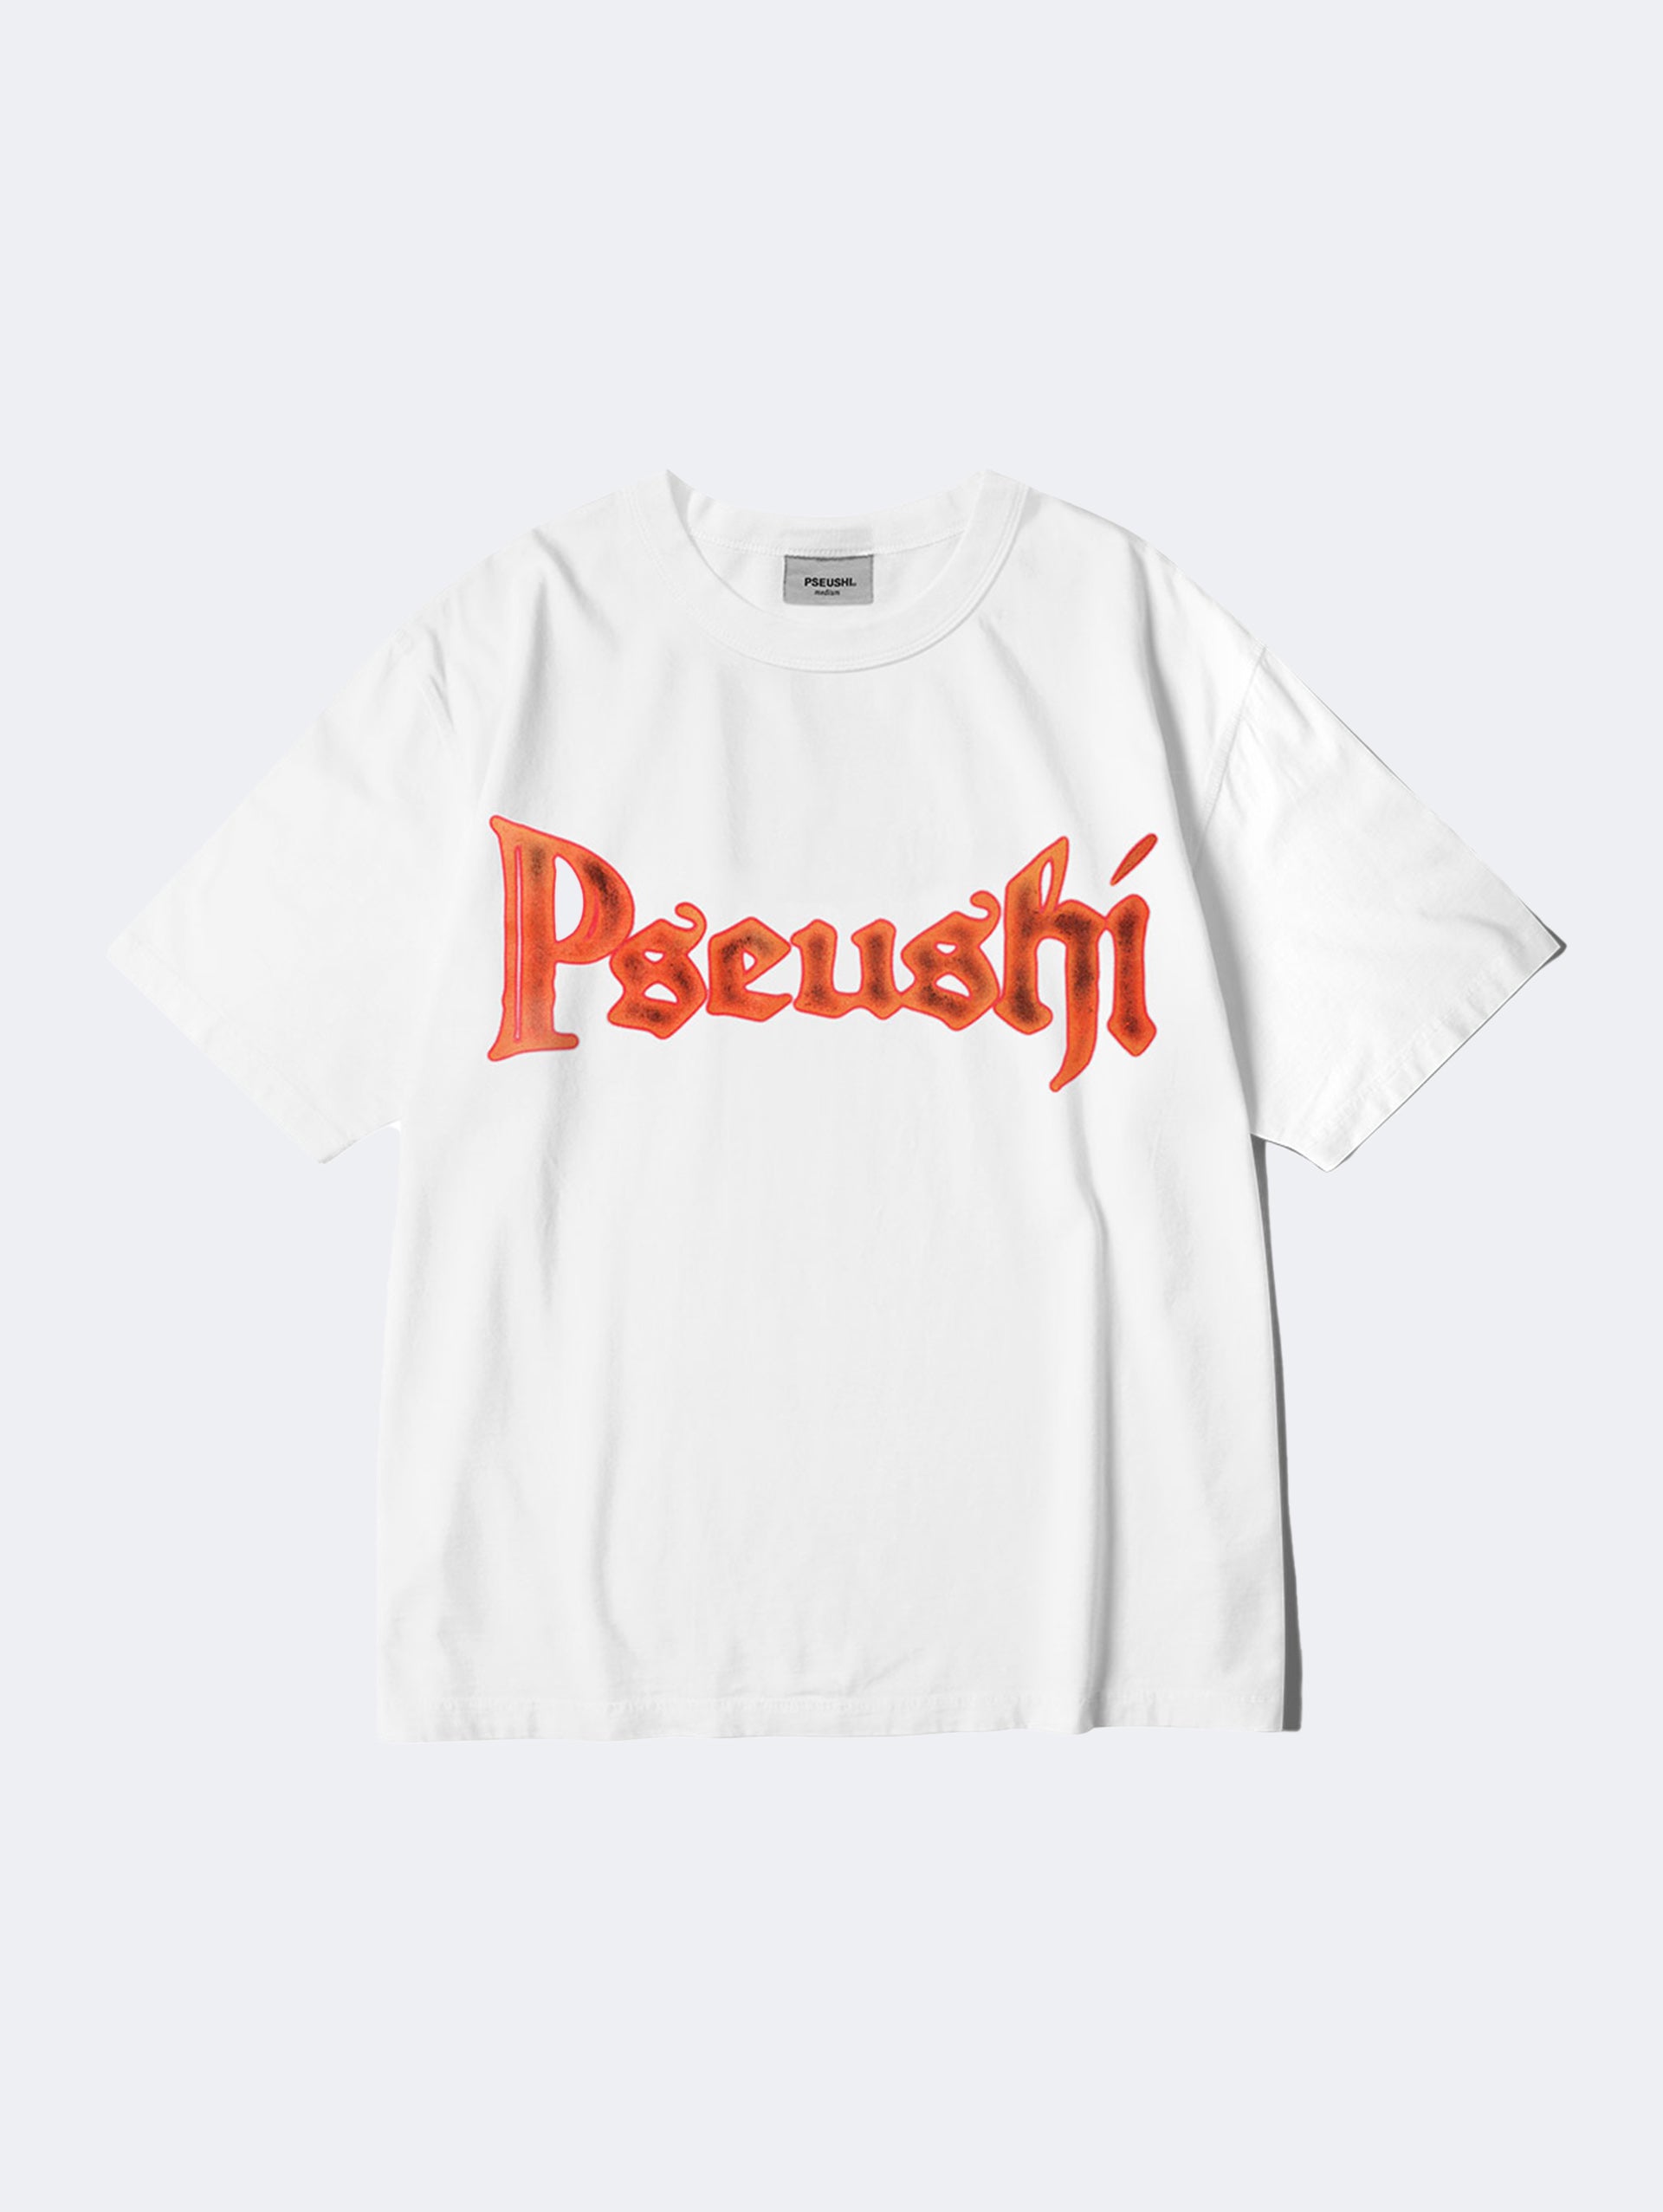 pseushi-blacksmiths-tee-white